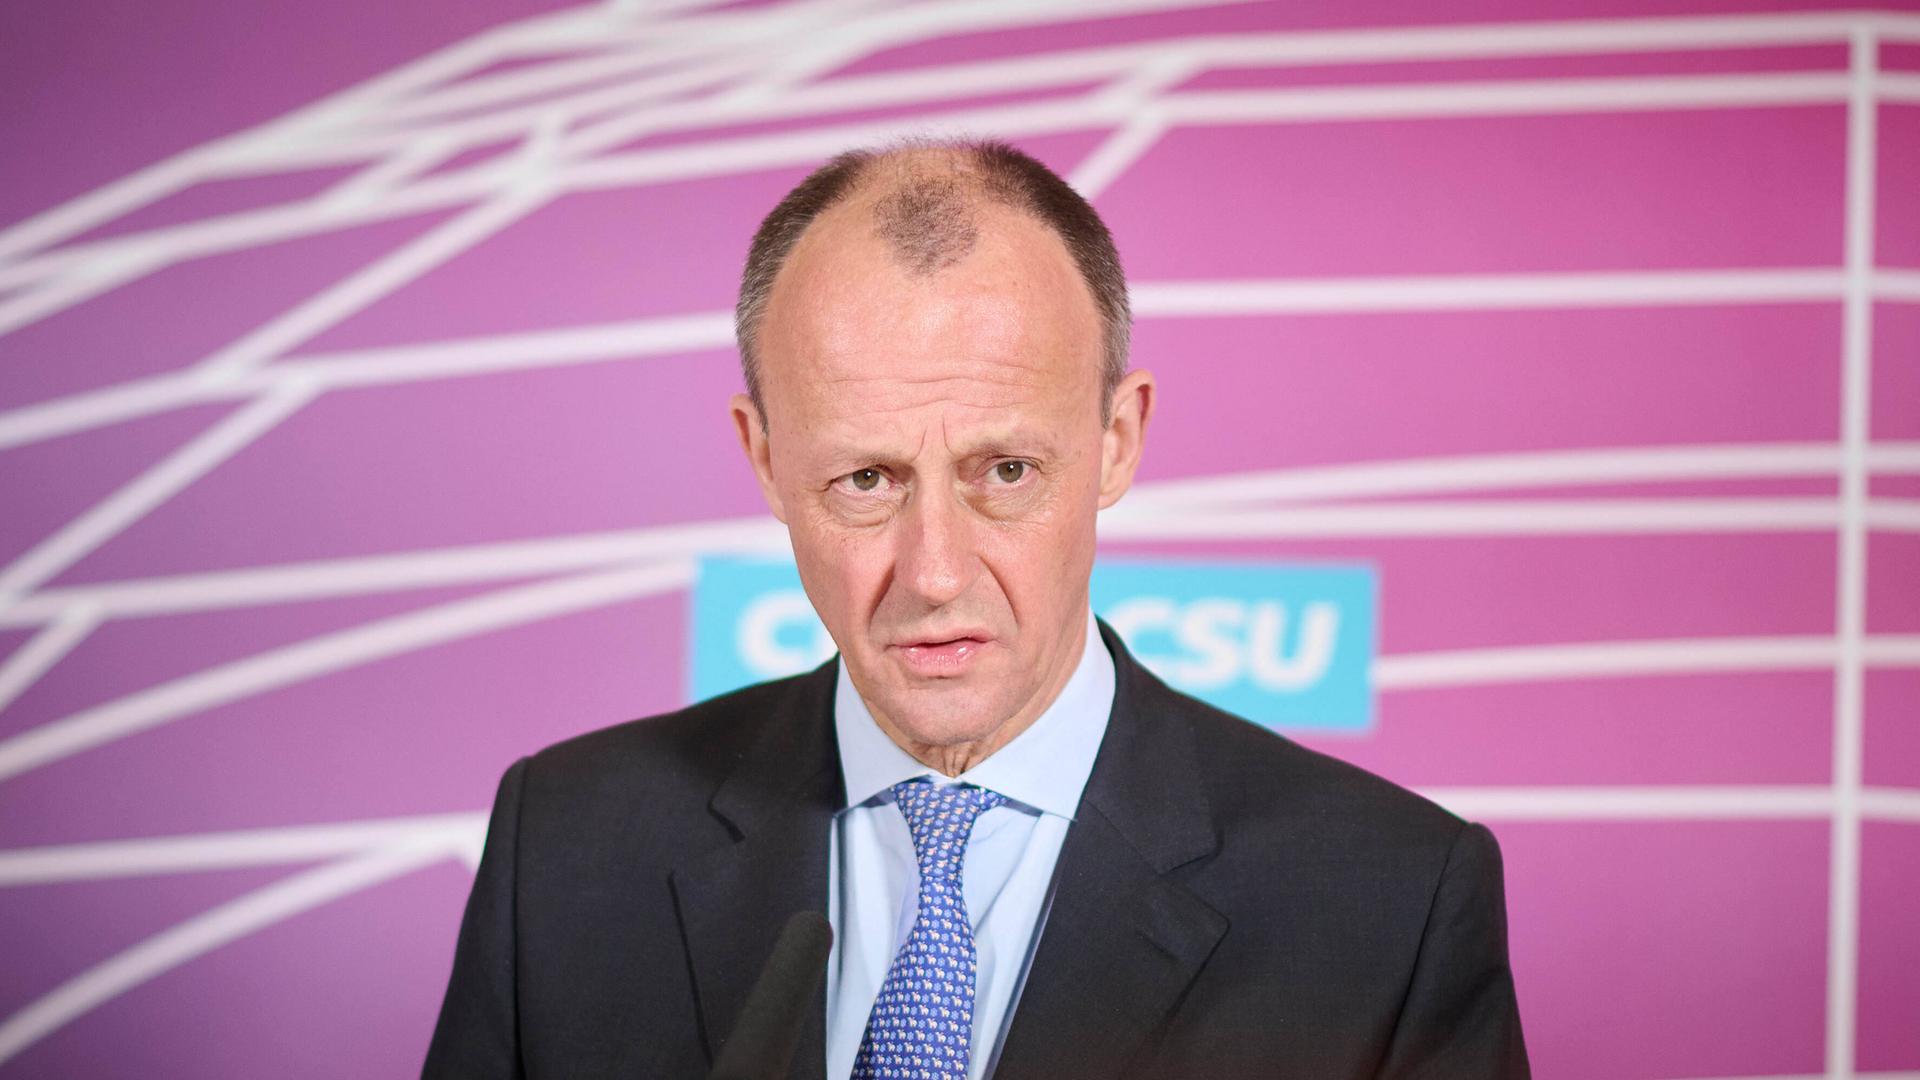 Friedrich Merz, Vorsitzender der CDU/CSU-Bundestagsfraktion, während der Pressekonferenz zu den Ereignissen in der Ukraine im Deutschen Bundestag am 24.02.2022 in Berlin